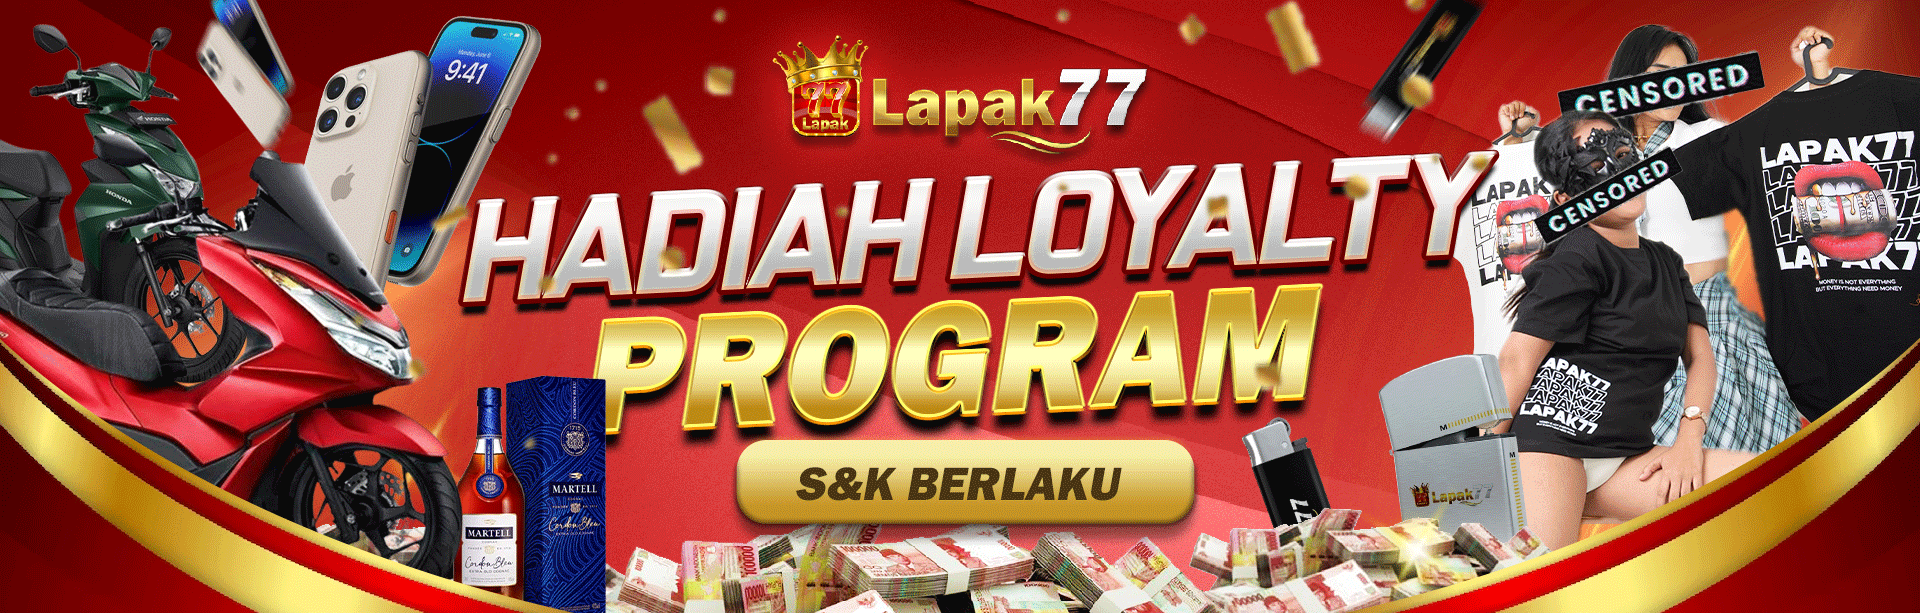 Claim Sekarang Loyality Program Lapak77